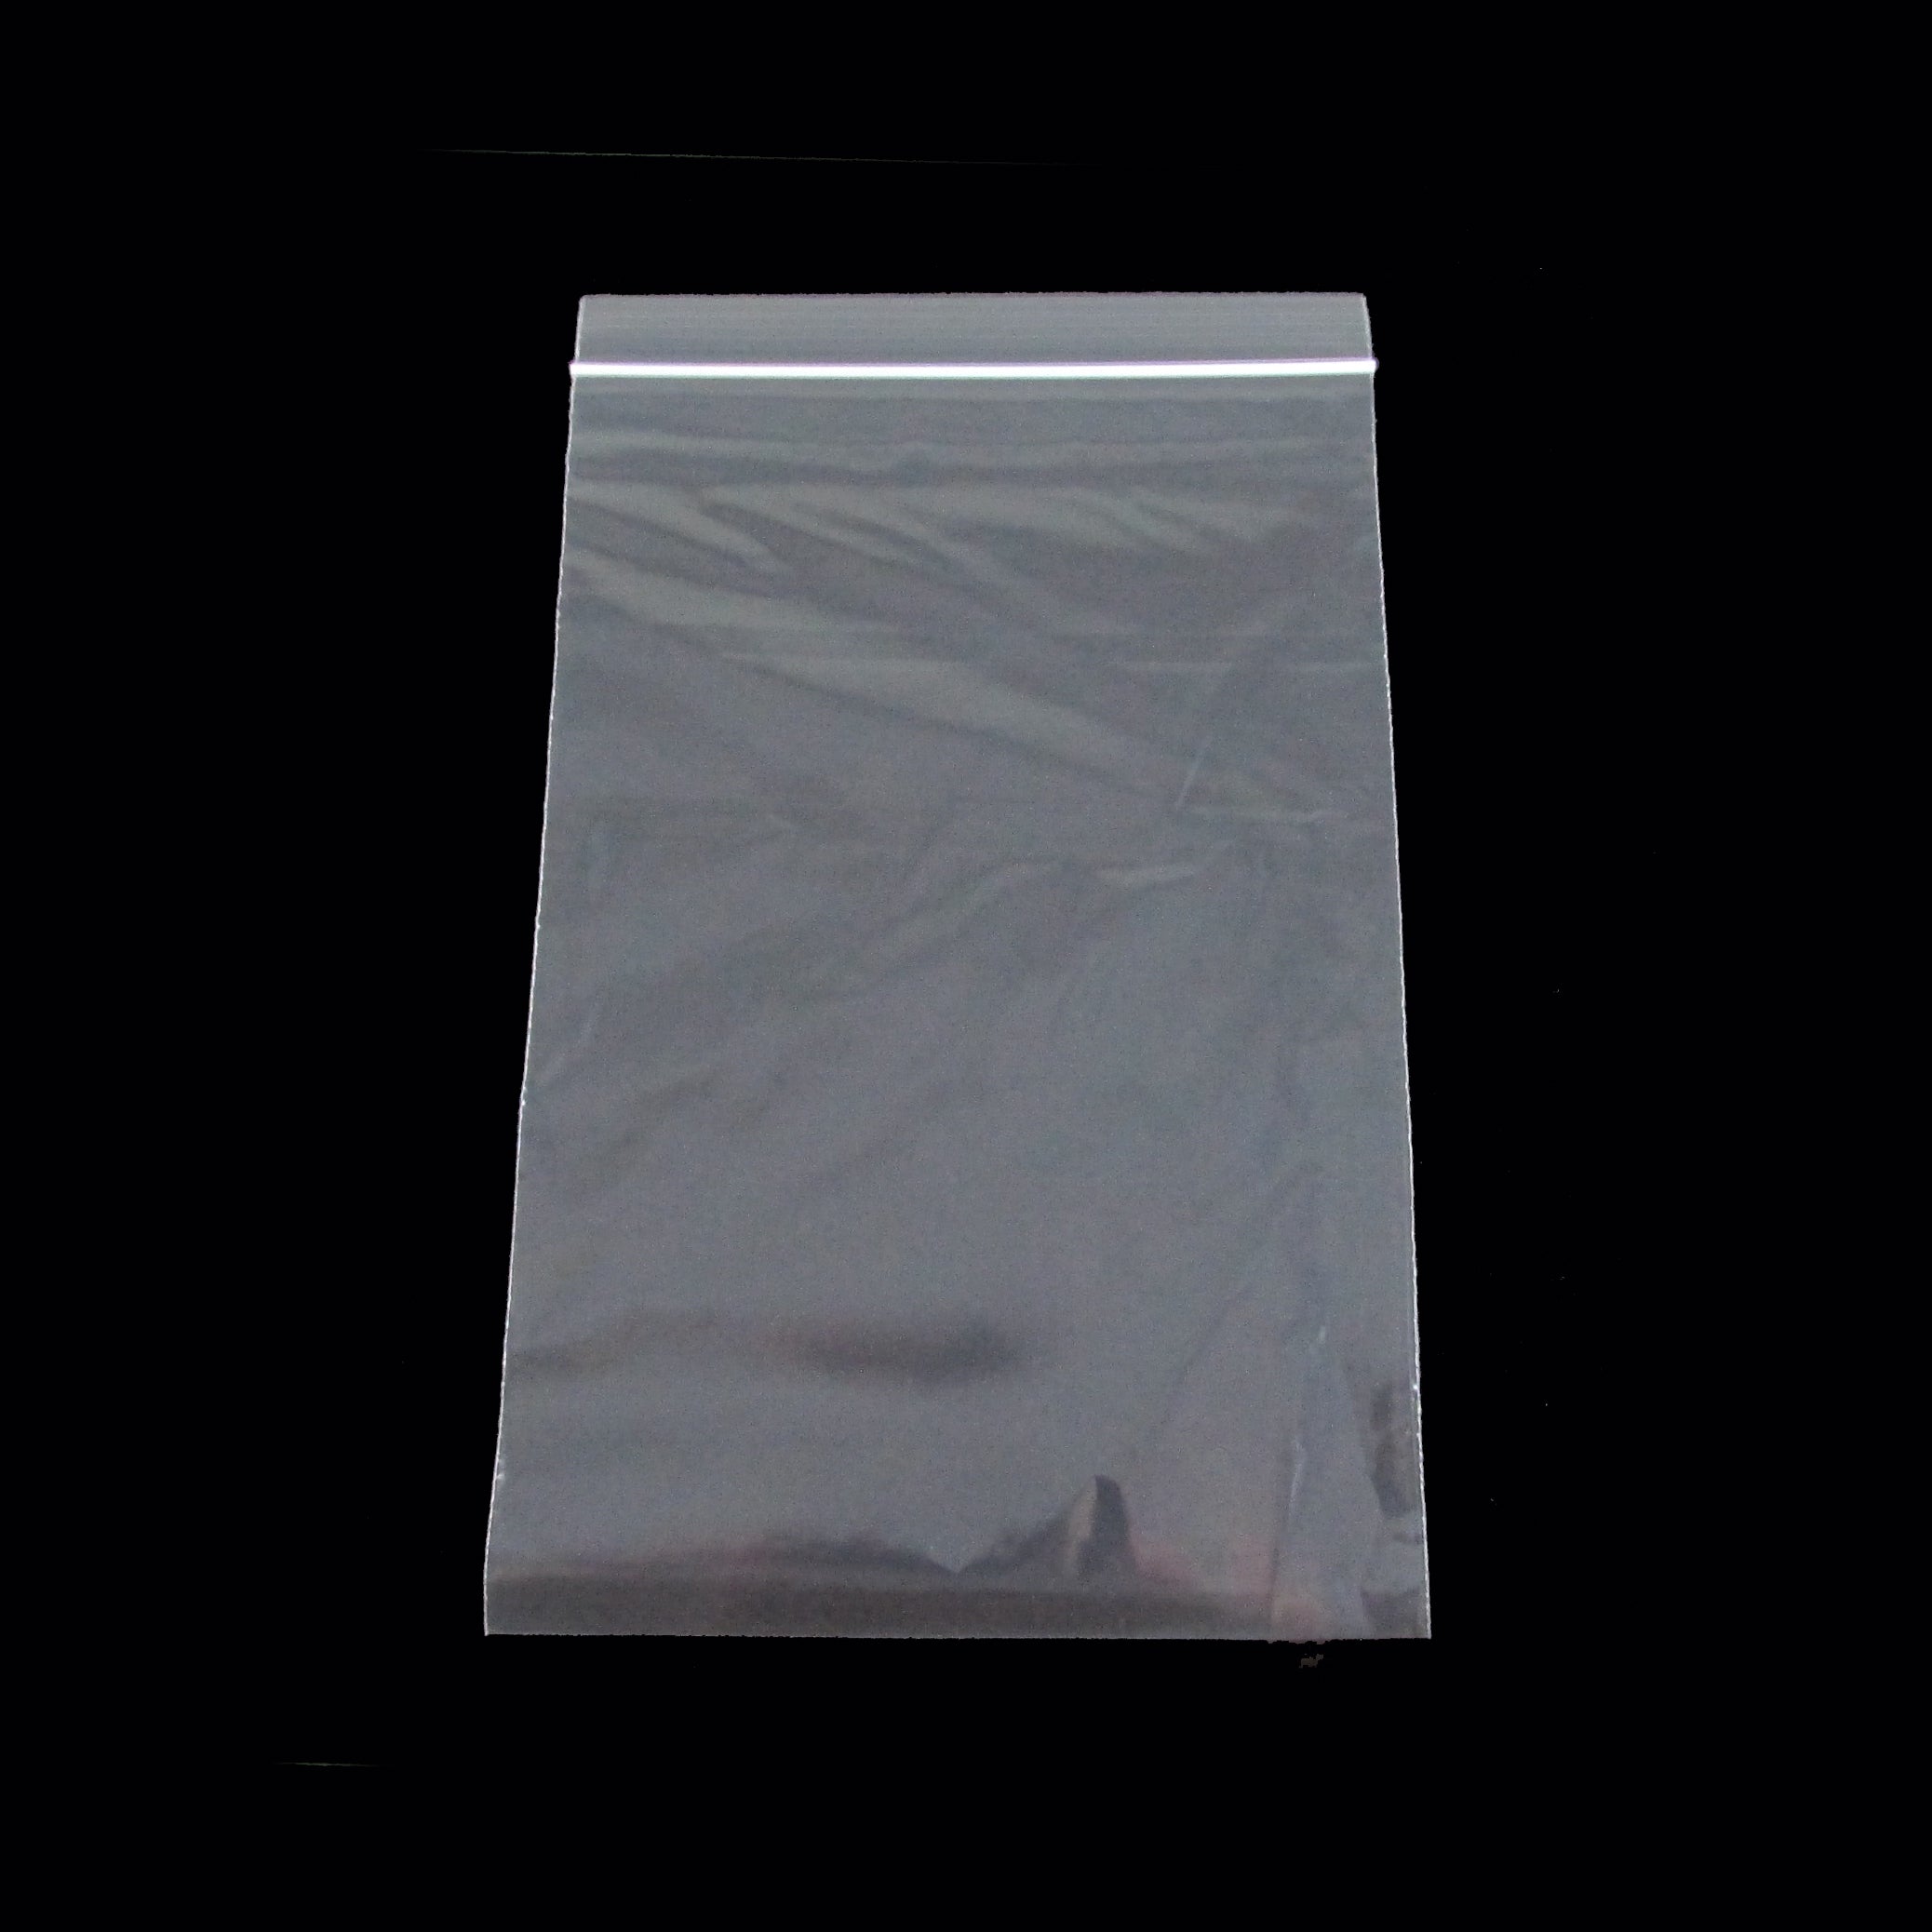 M02909-10 MOREZMORE 10 Ziplock Bags 6x9 Clear Plastic Zip Lock Bag